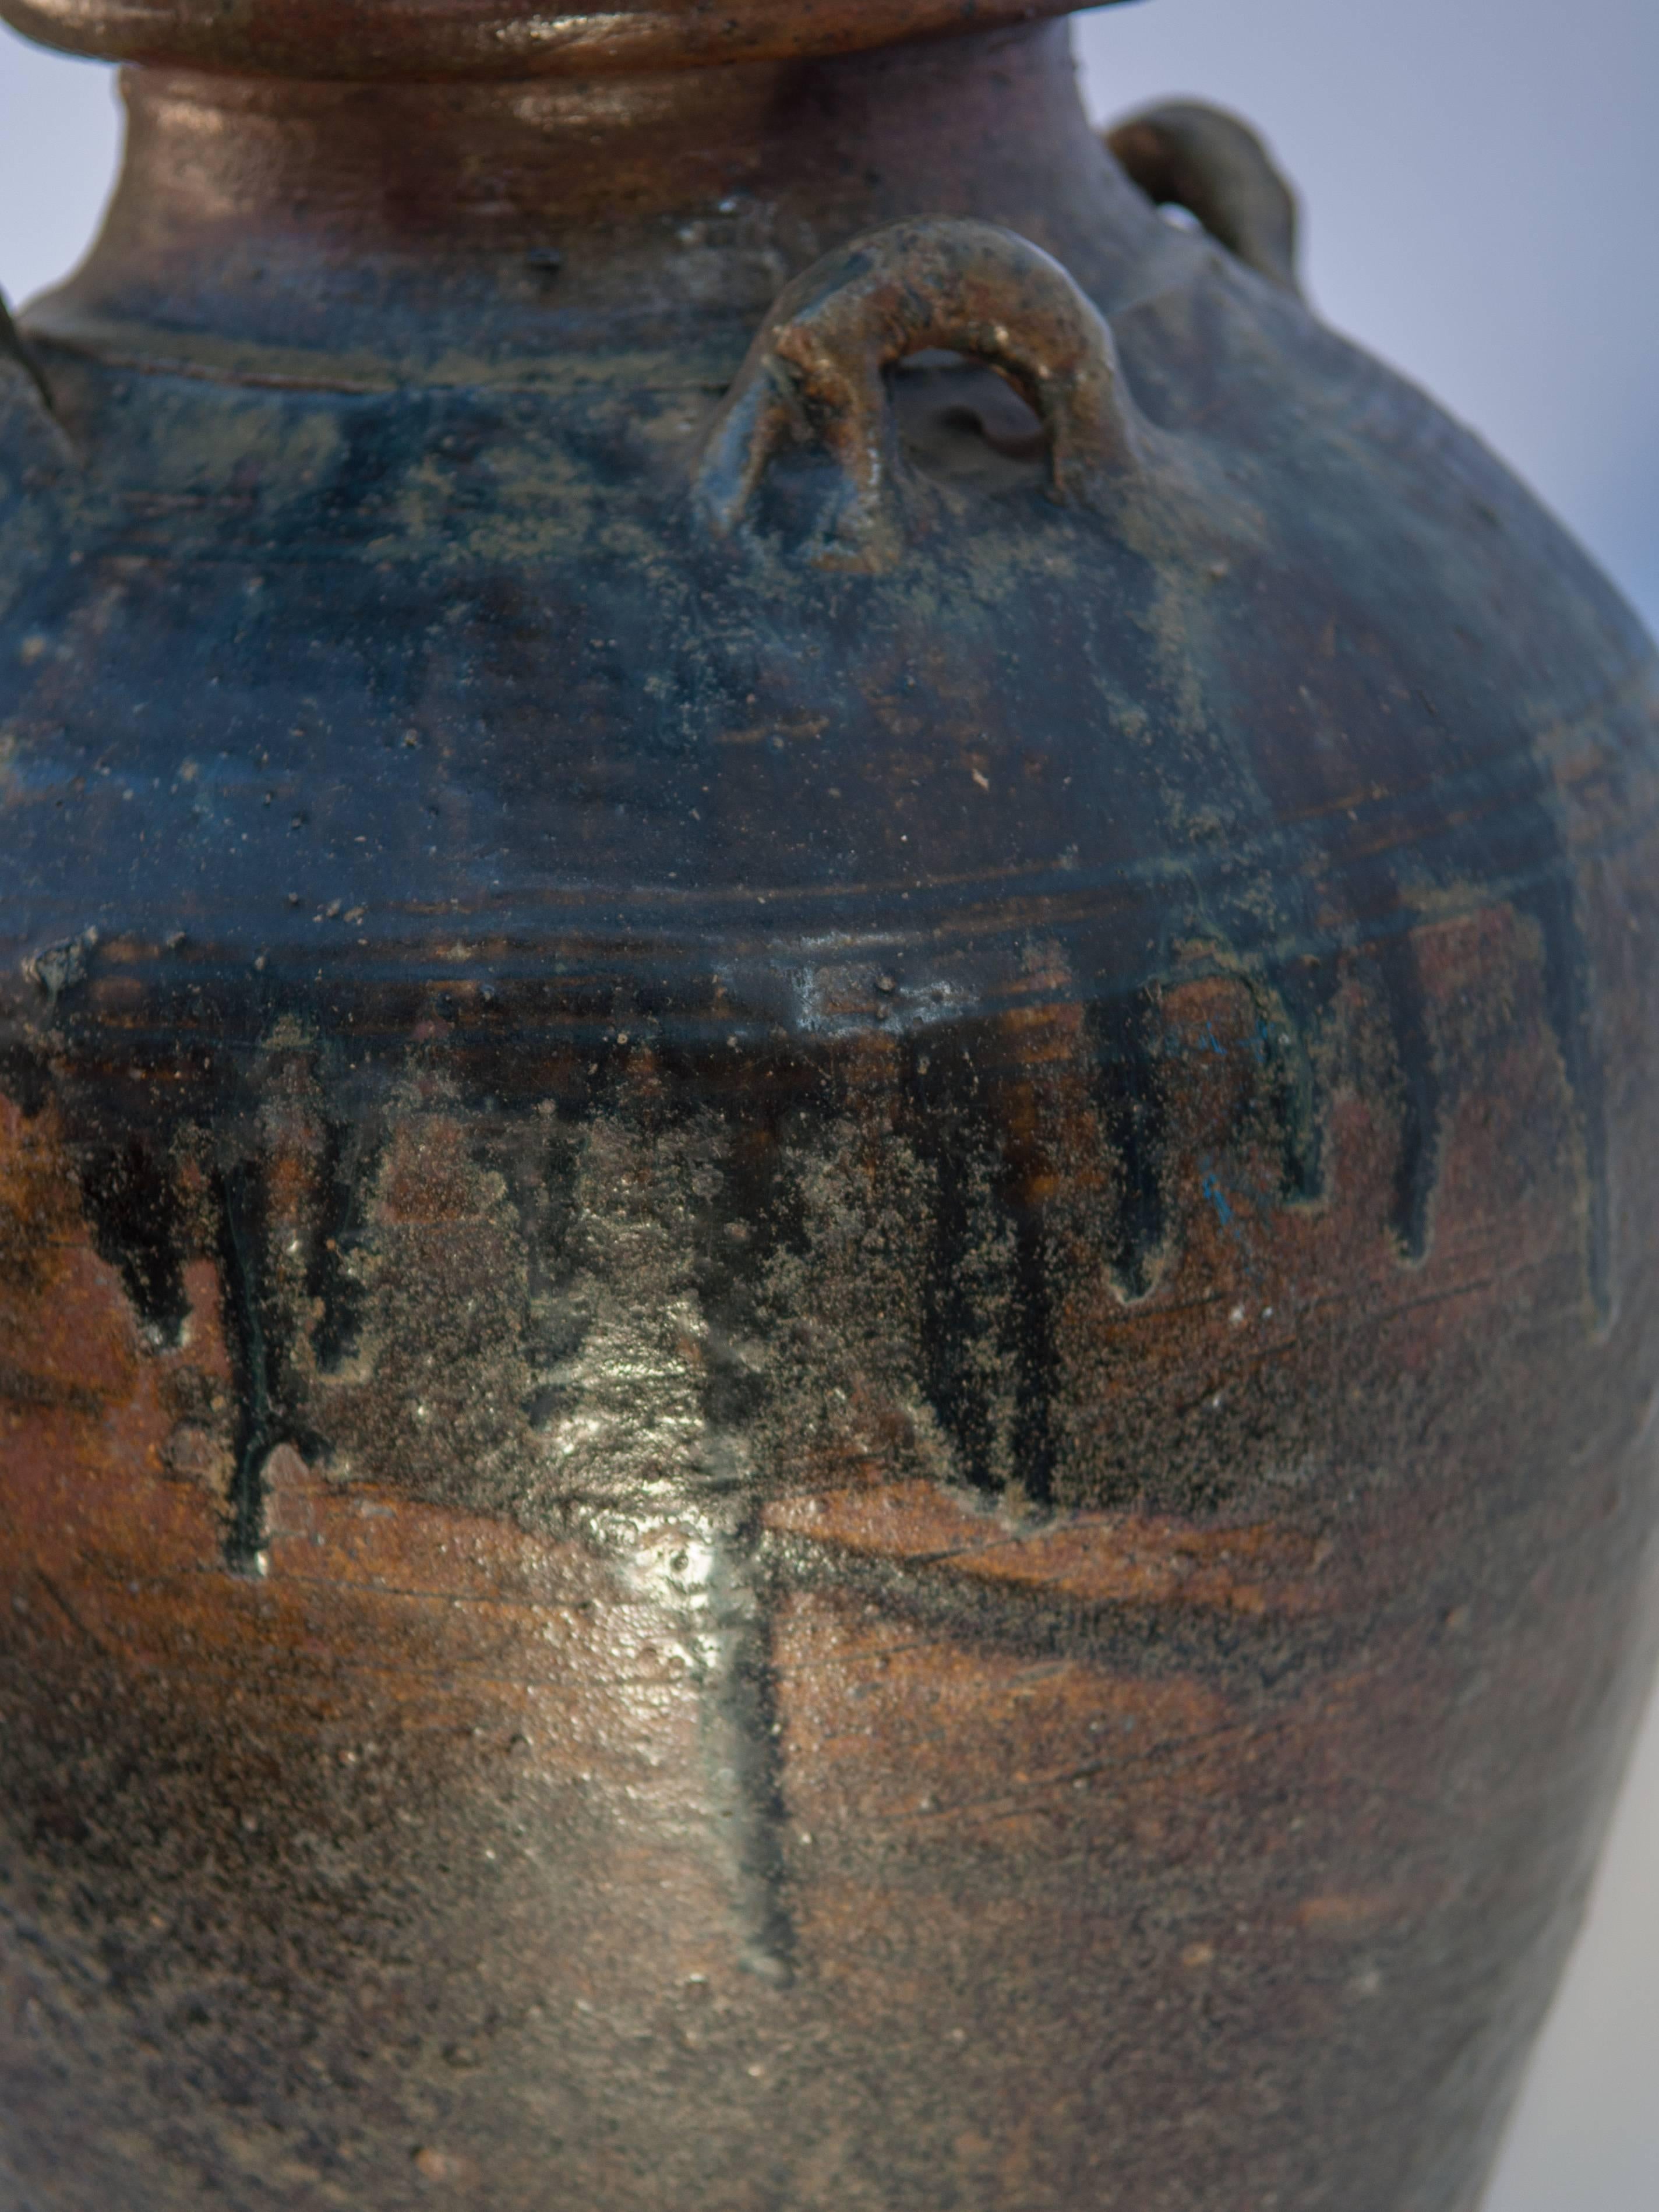 Martaban Ware Stoneware Storage Jar, Running Glaze, Ming Dynasty, Found in Laos 2